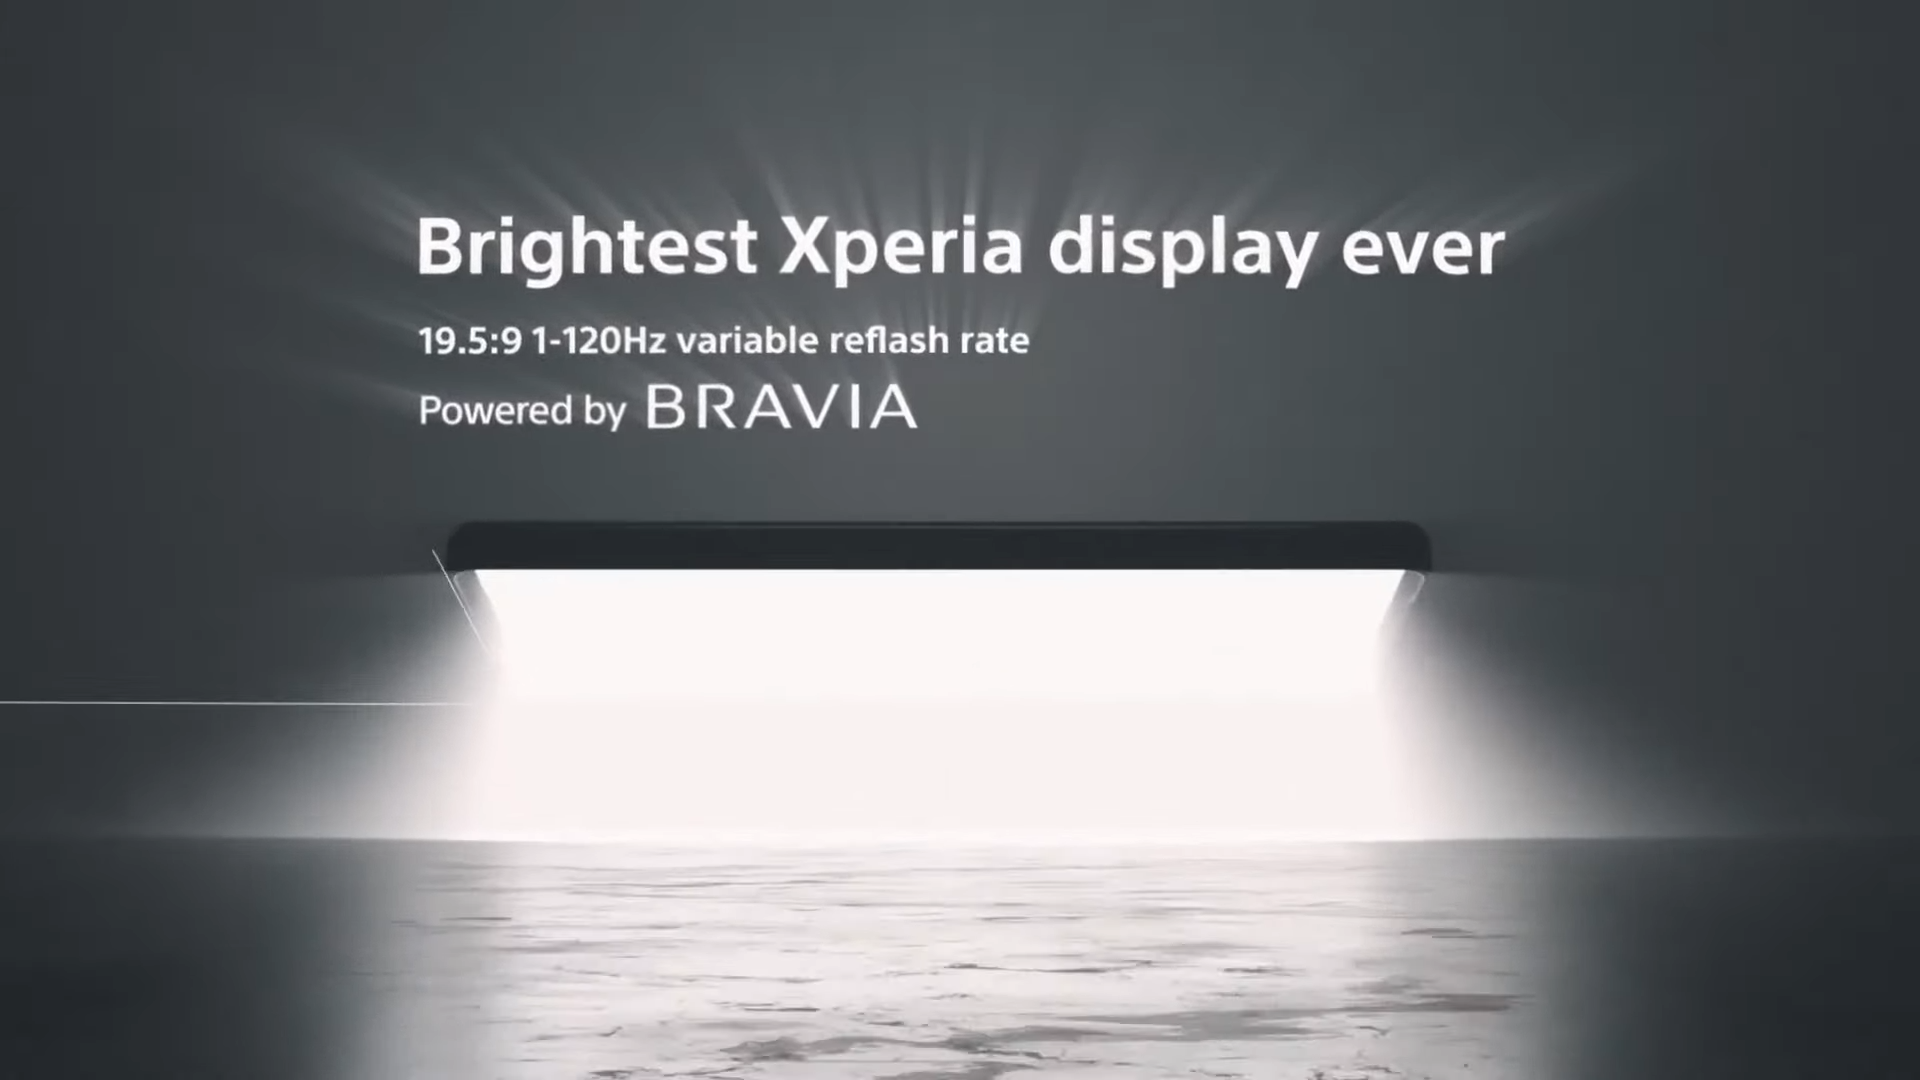 يعد هاتف Sony Xperia 1 VI رسميًا مزودًا بشاشة تشبه التلفاز وتقريب بصري 7.1x